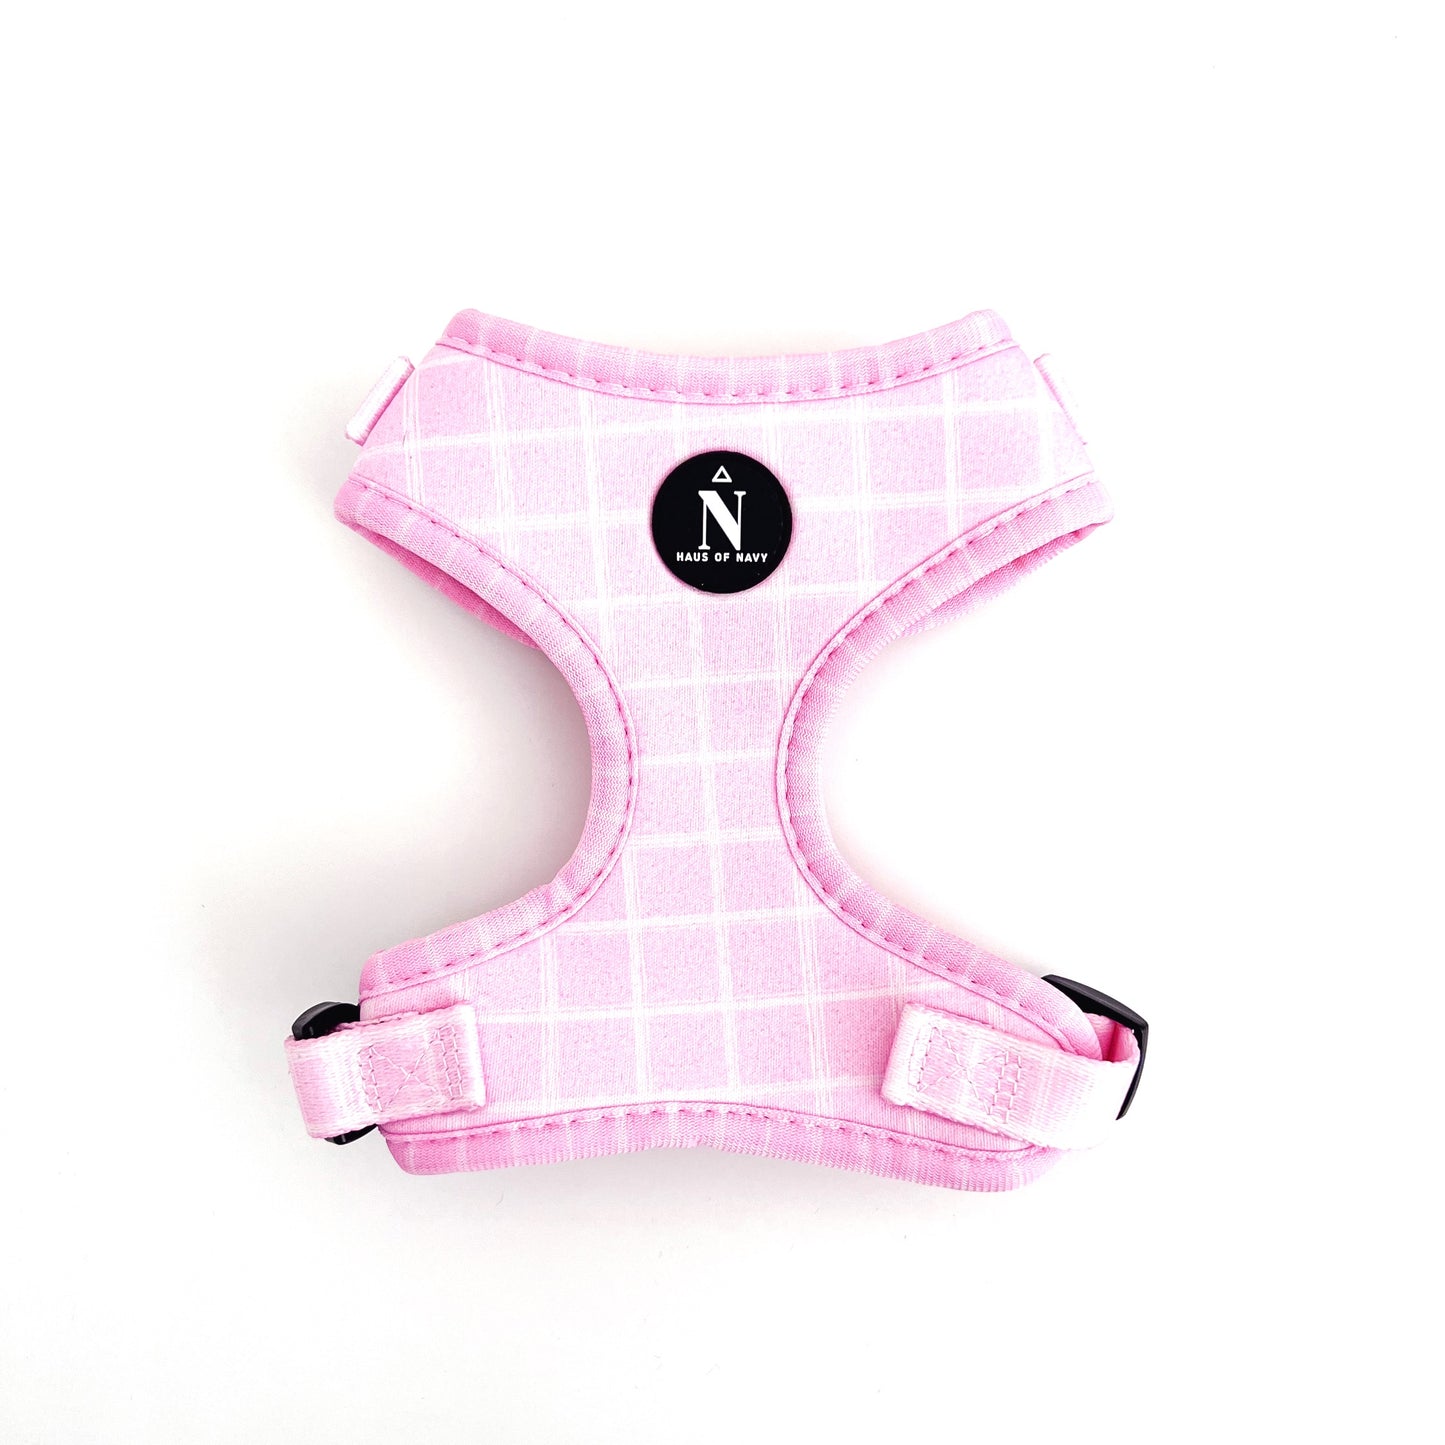 Adjustable Harness - Pink Plaid